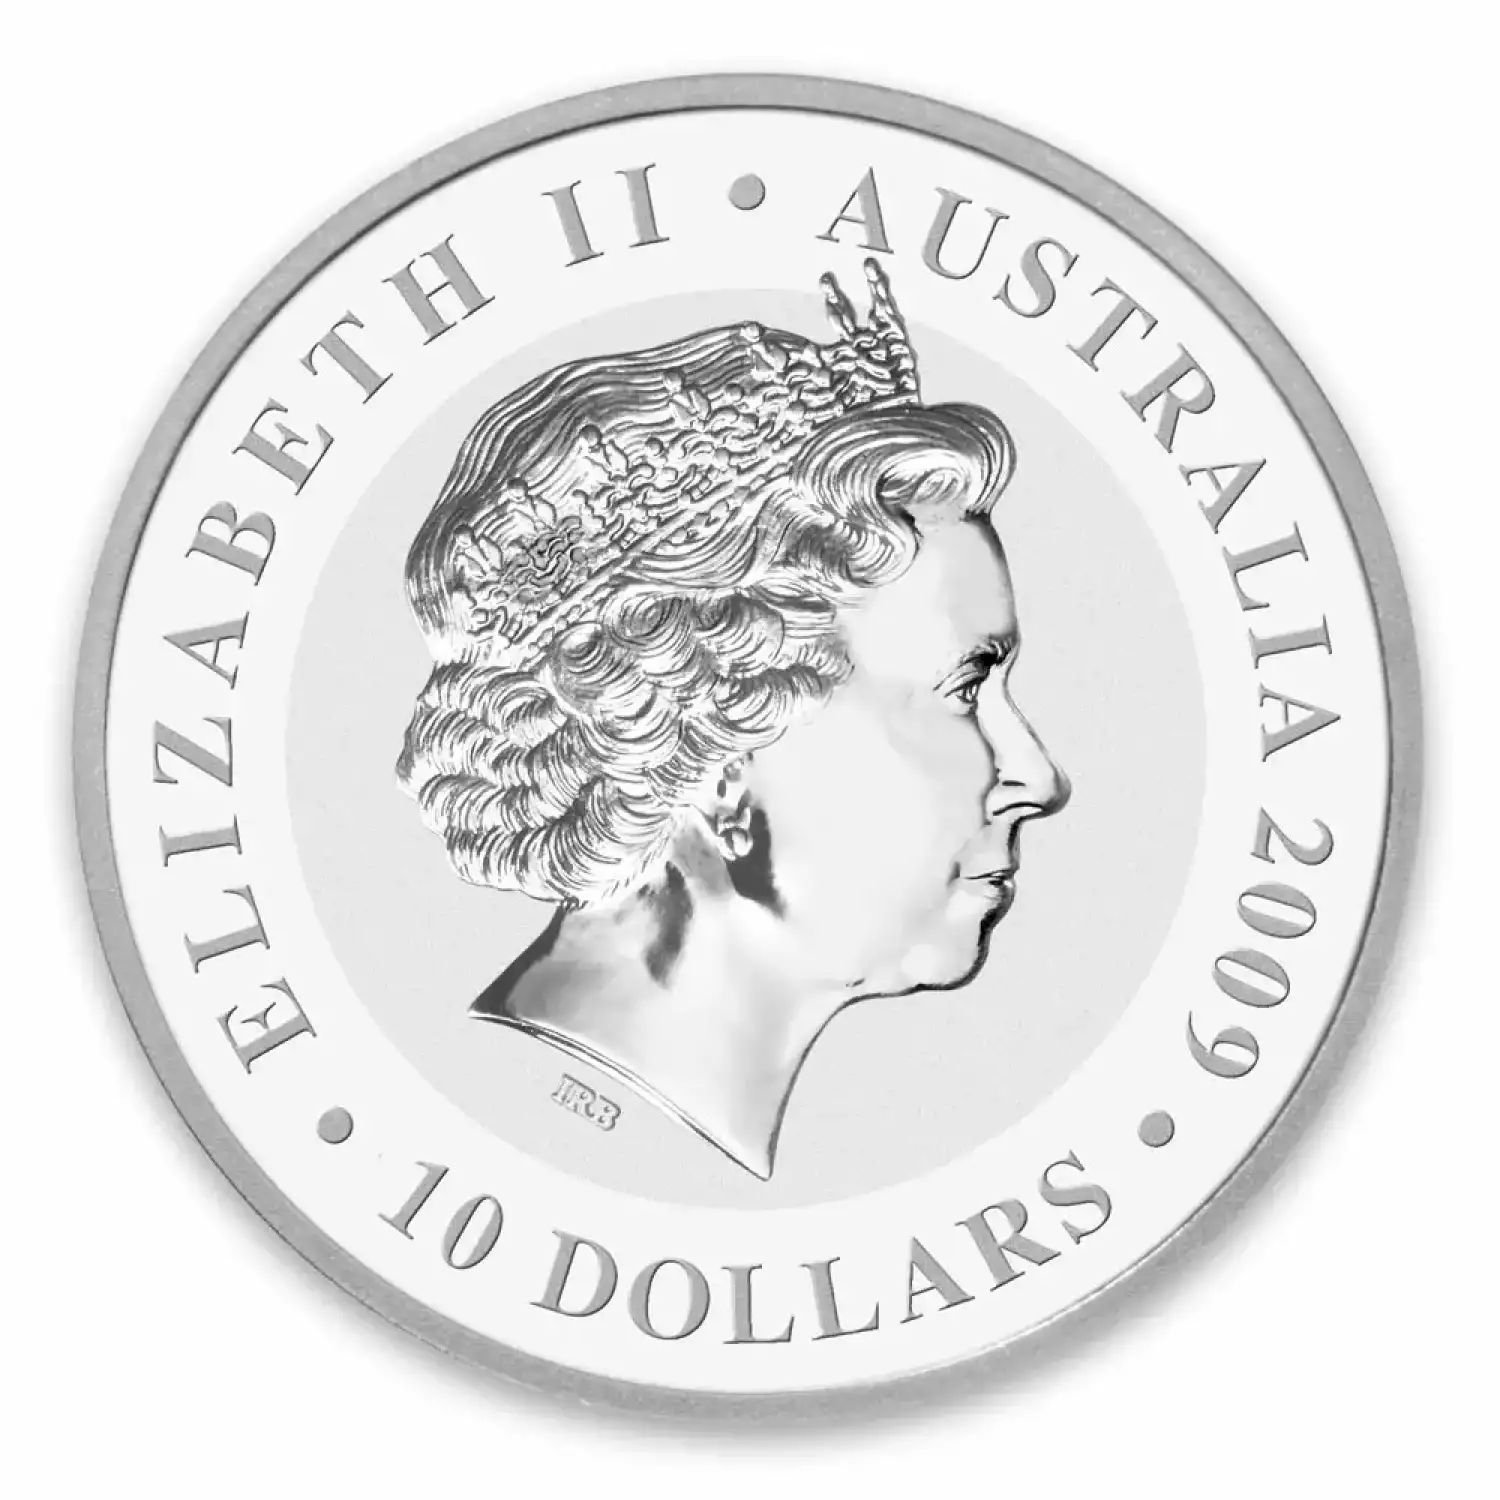 2009 10 oz Australian Perth Mint Silver Koala (2)